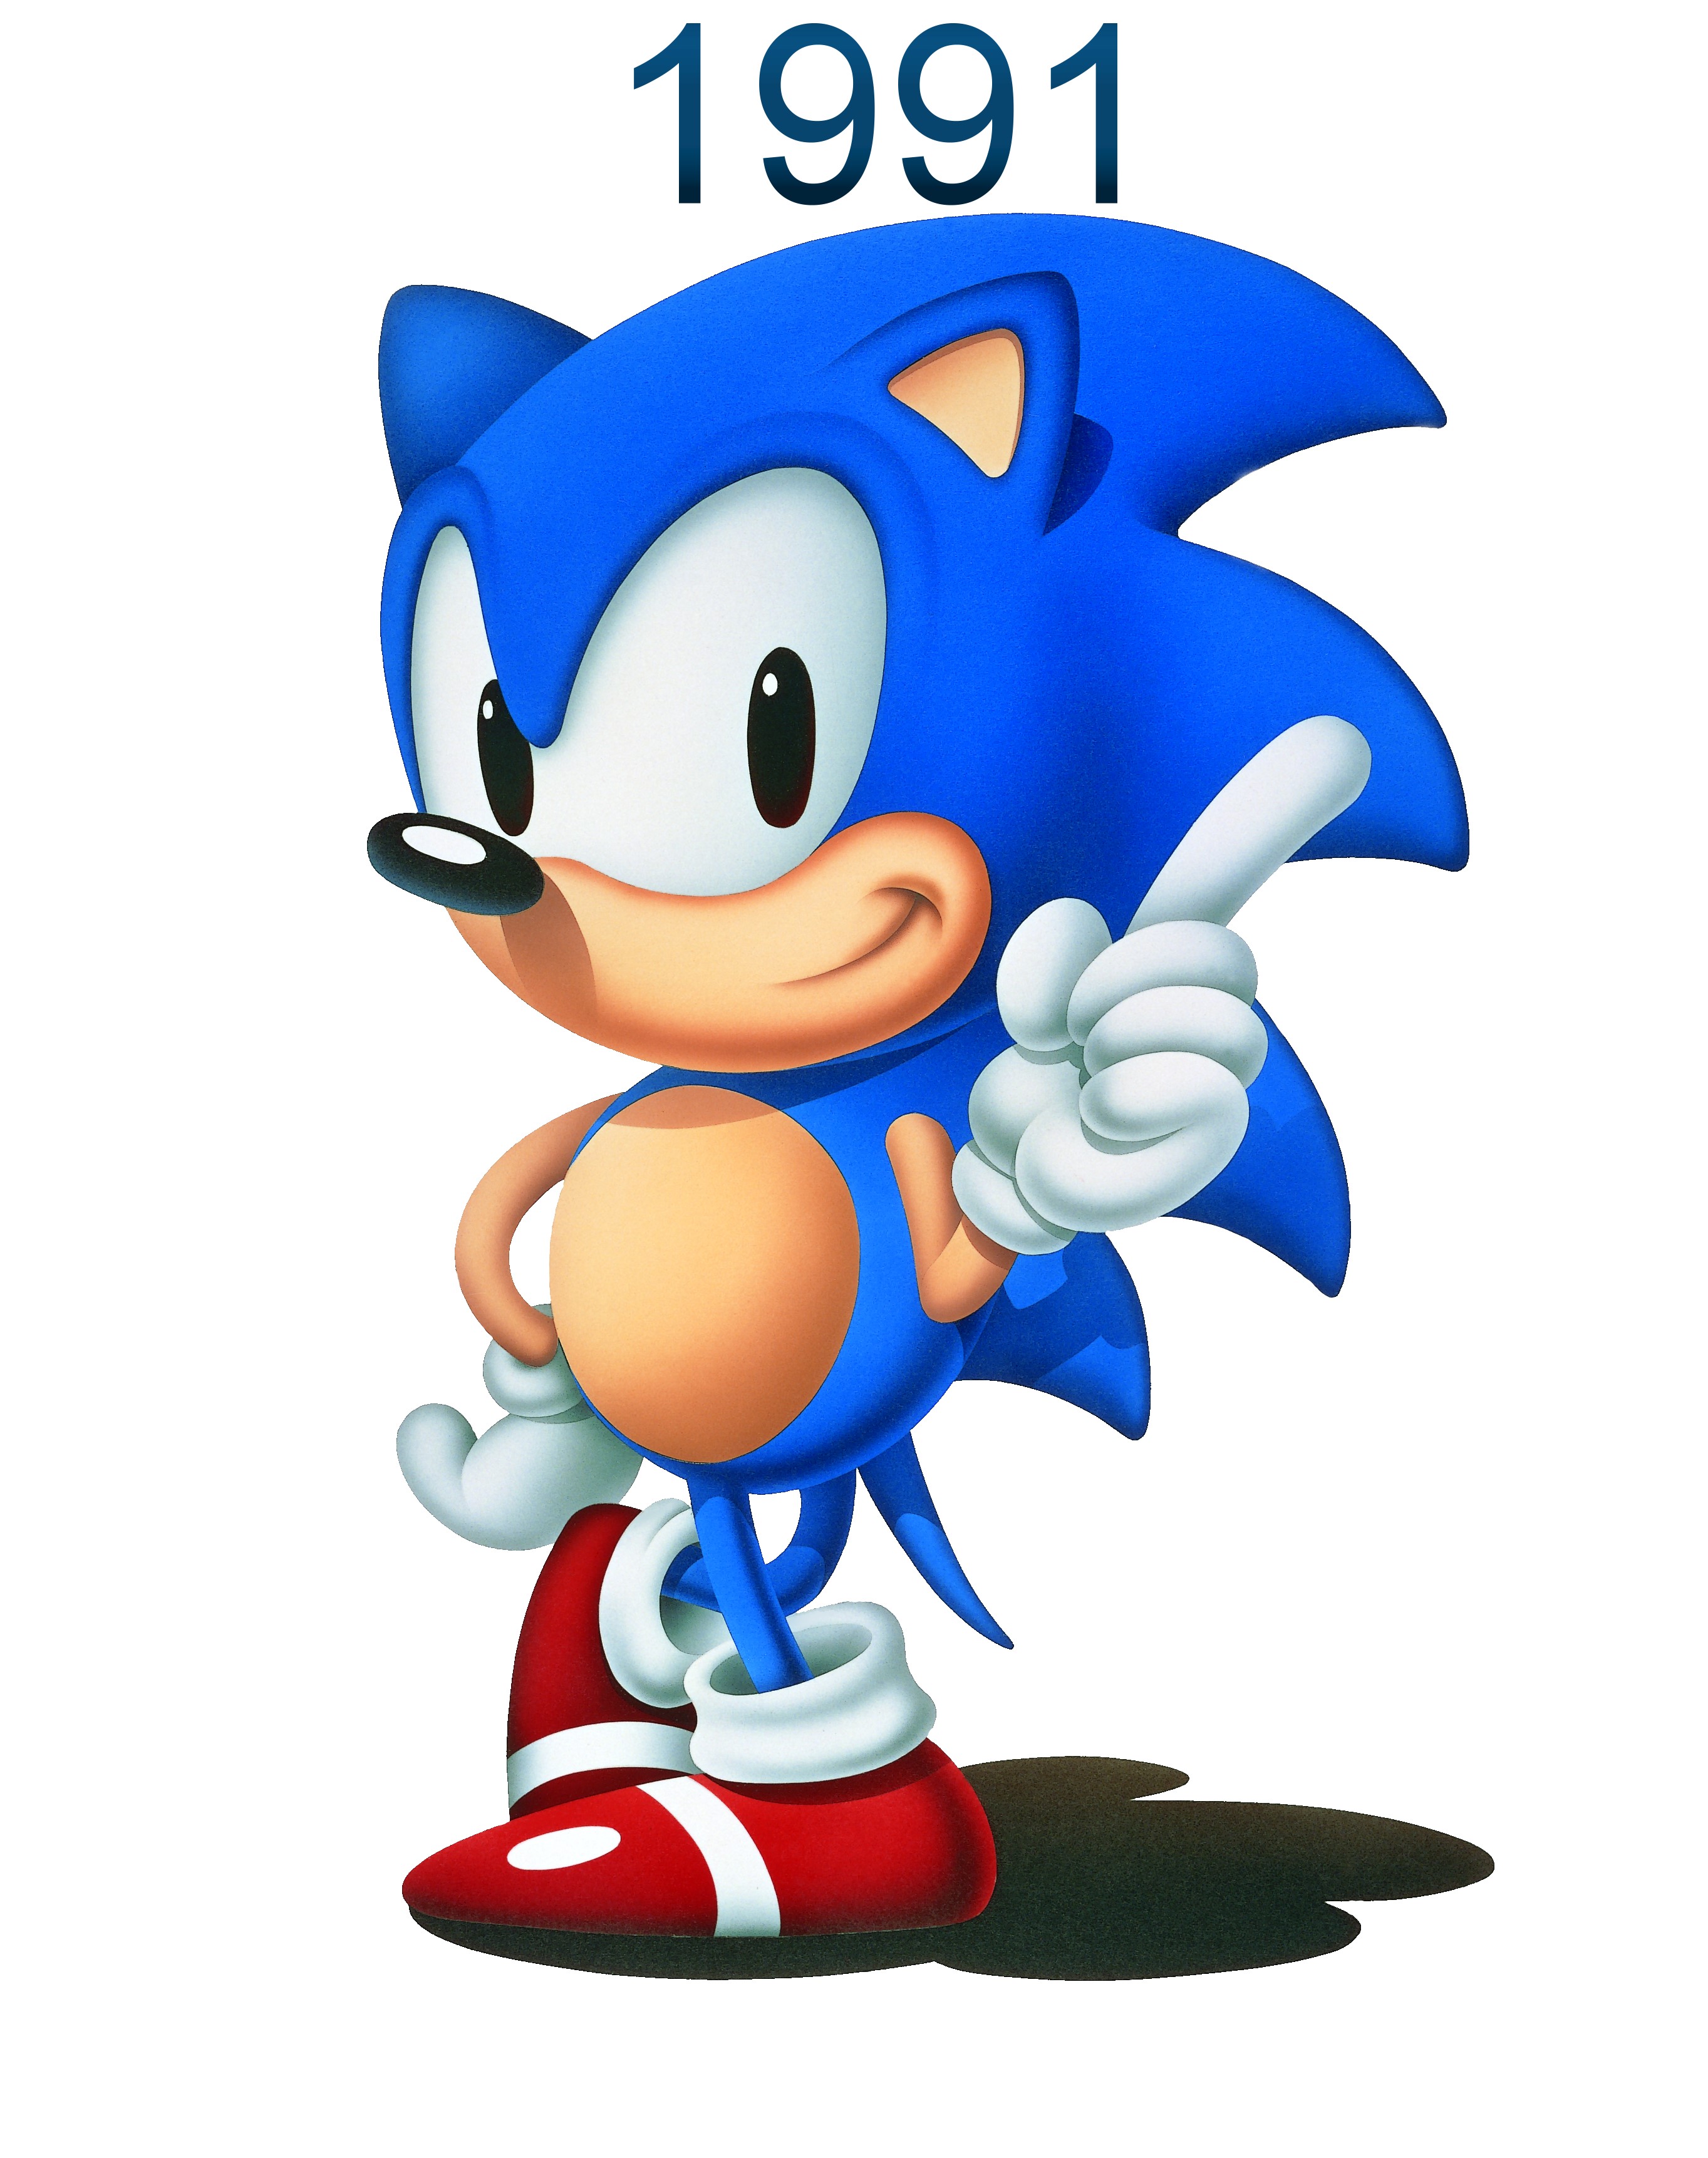 Sonic
